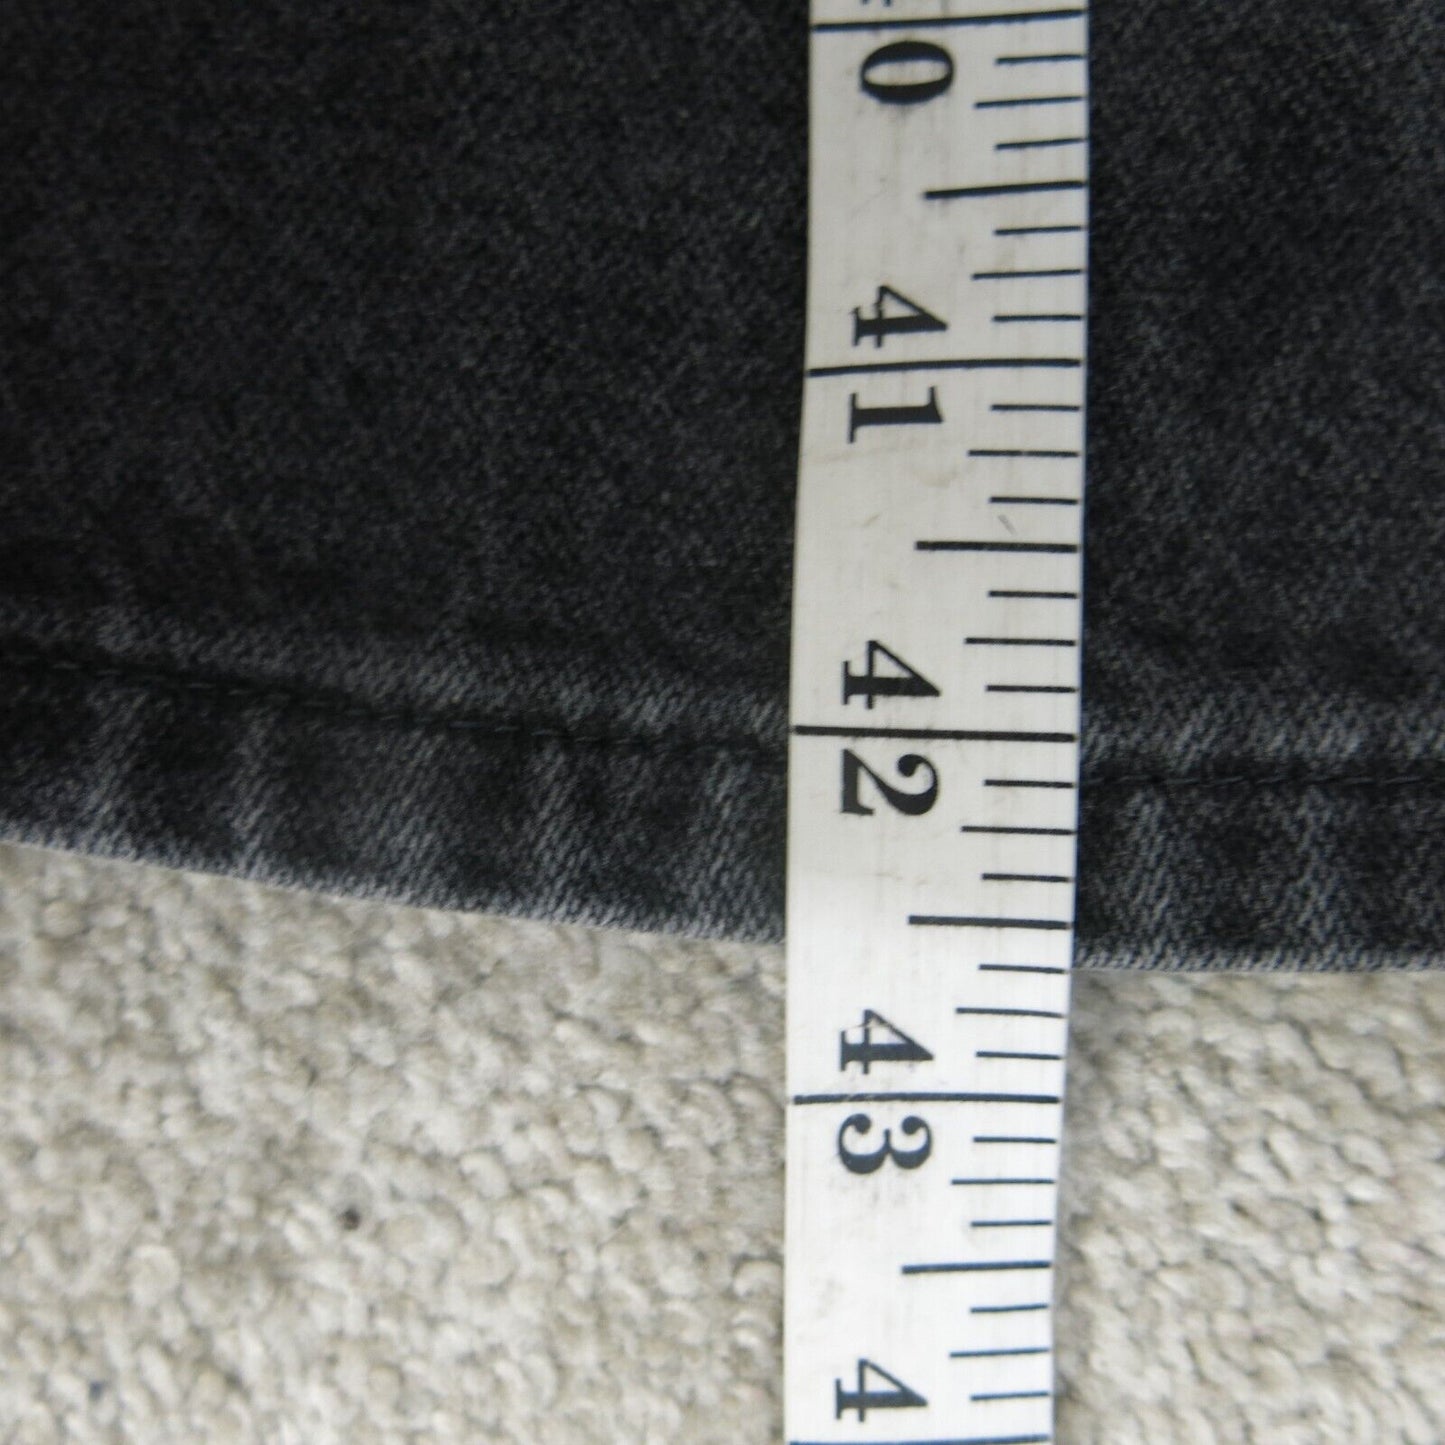 Wrangler Jeans Mens W36XL34 Black 13MWZWK Denim Stretch Straight Leg Workwear